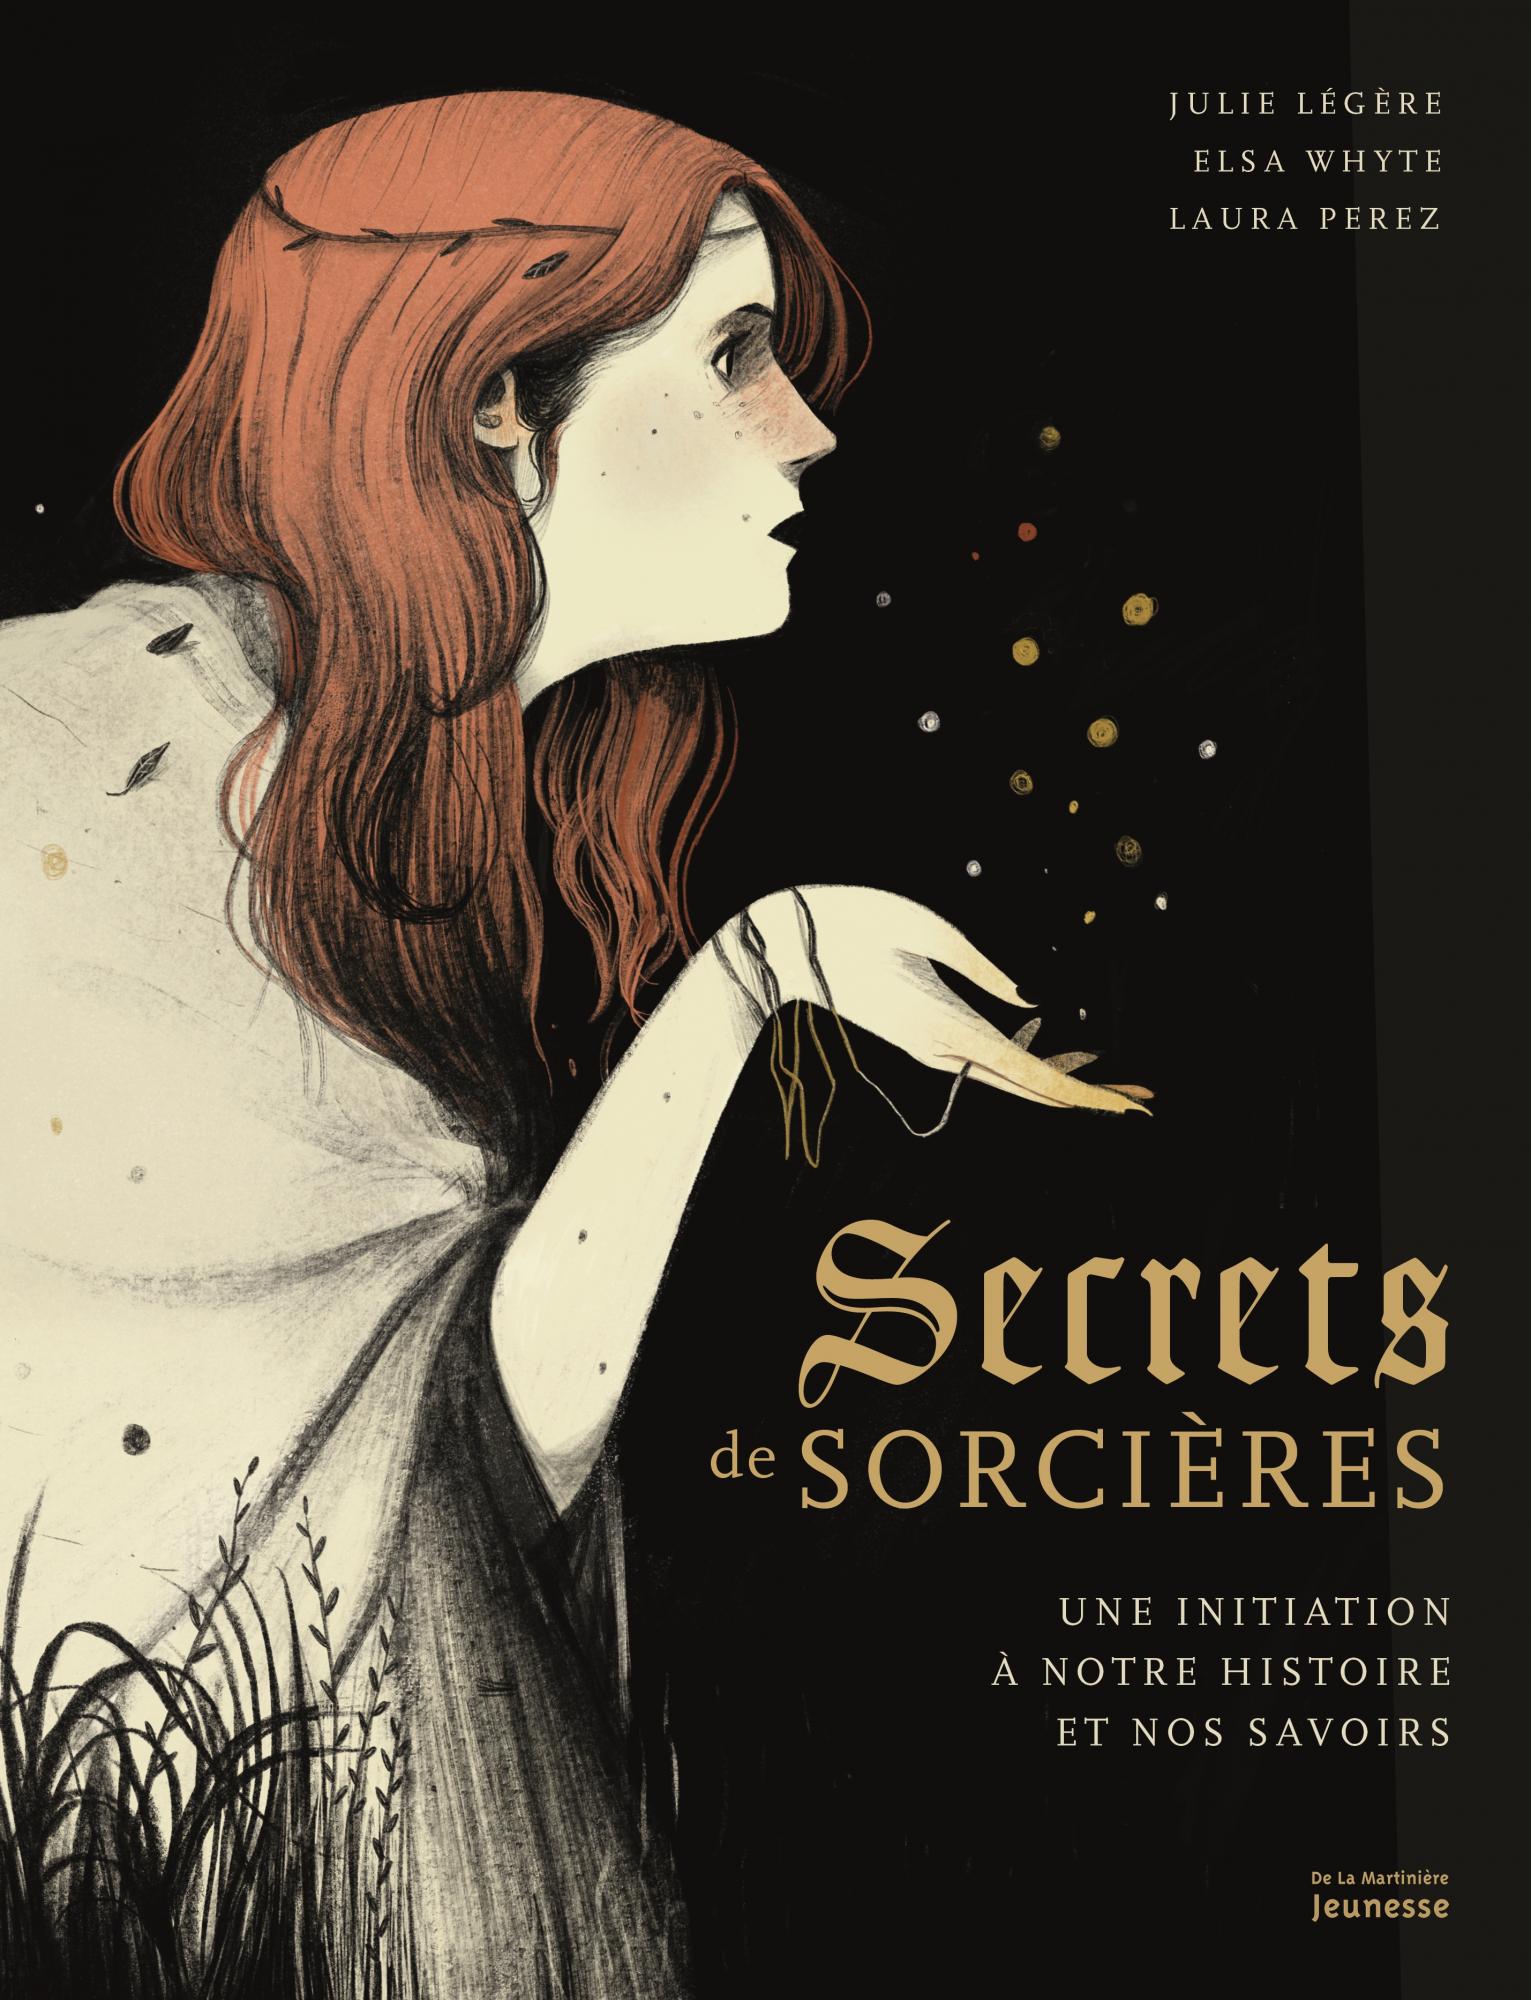 Elsa Whyte, Julie Légère, Laura Pérez (Illustratrice): Secrets de sorcières (Français language, La Martinière Jeunesse)